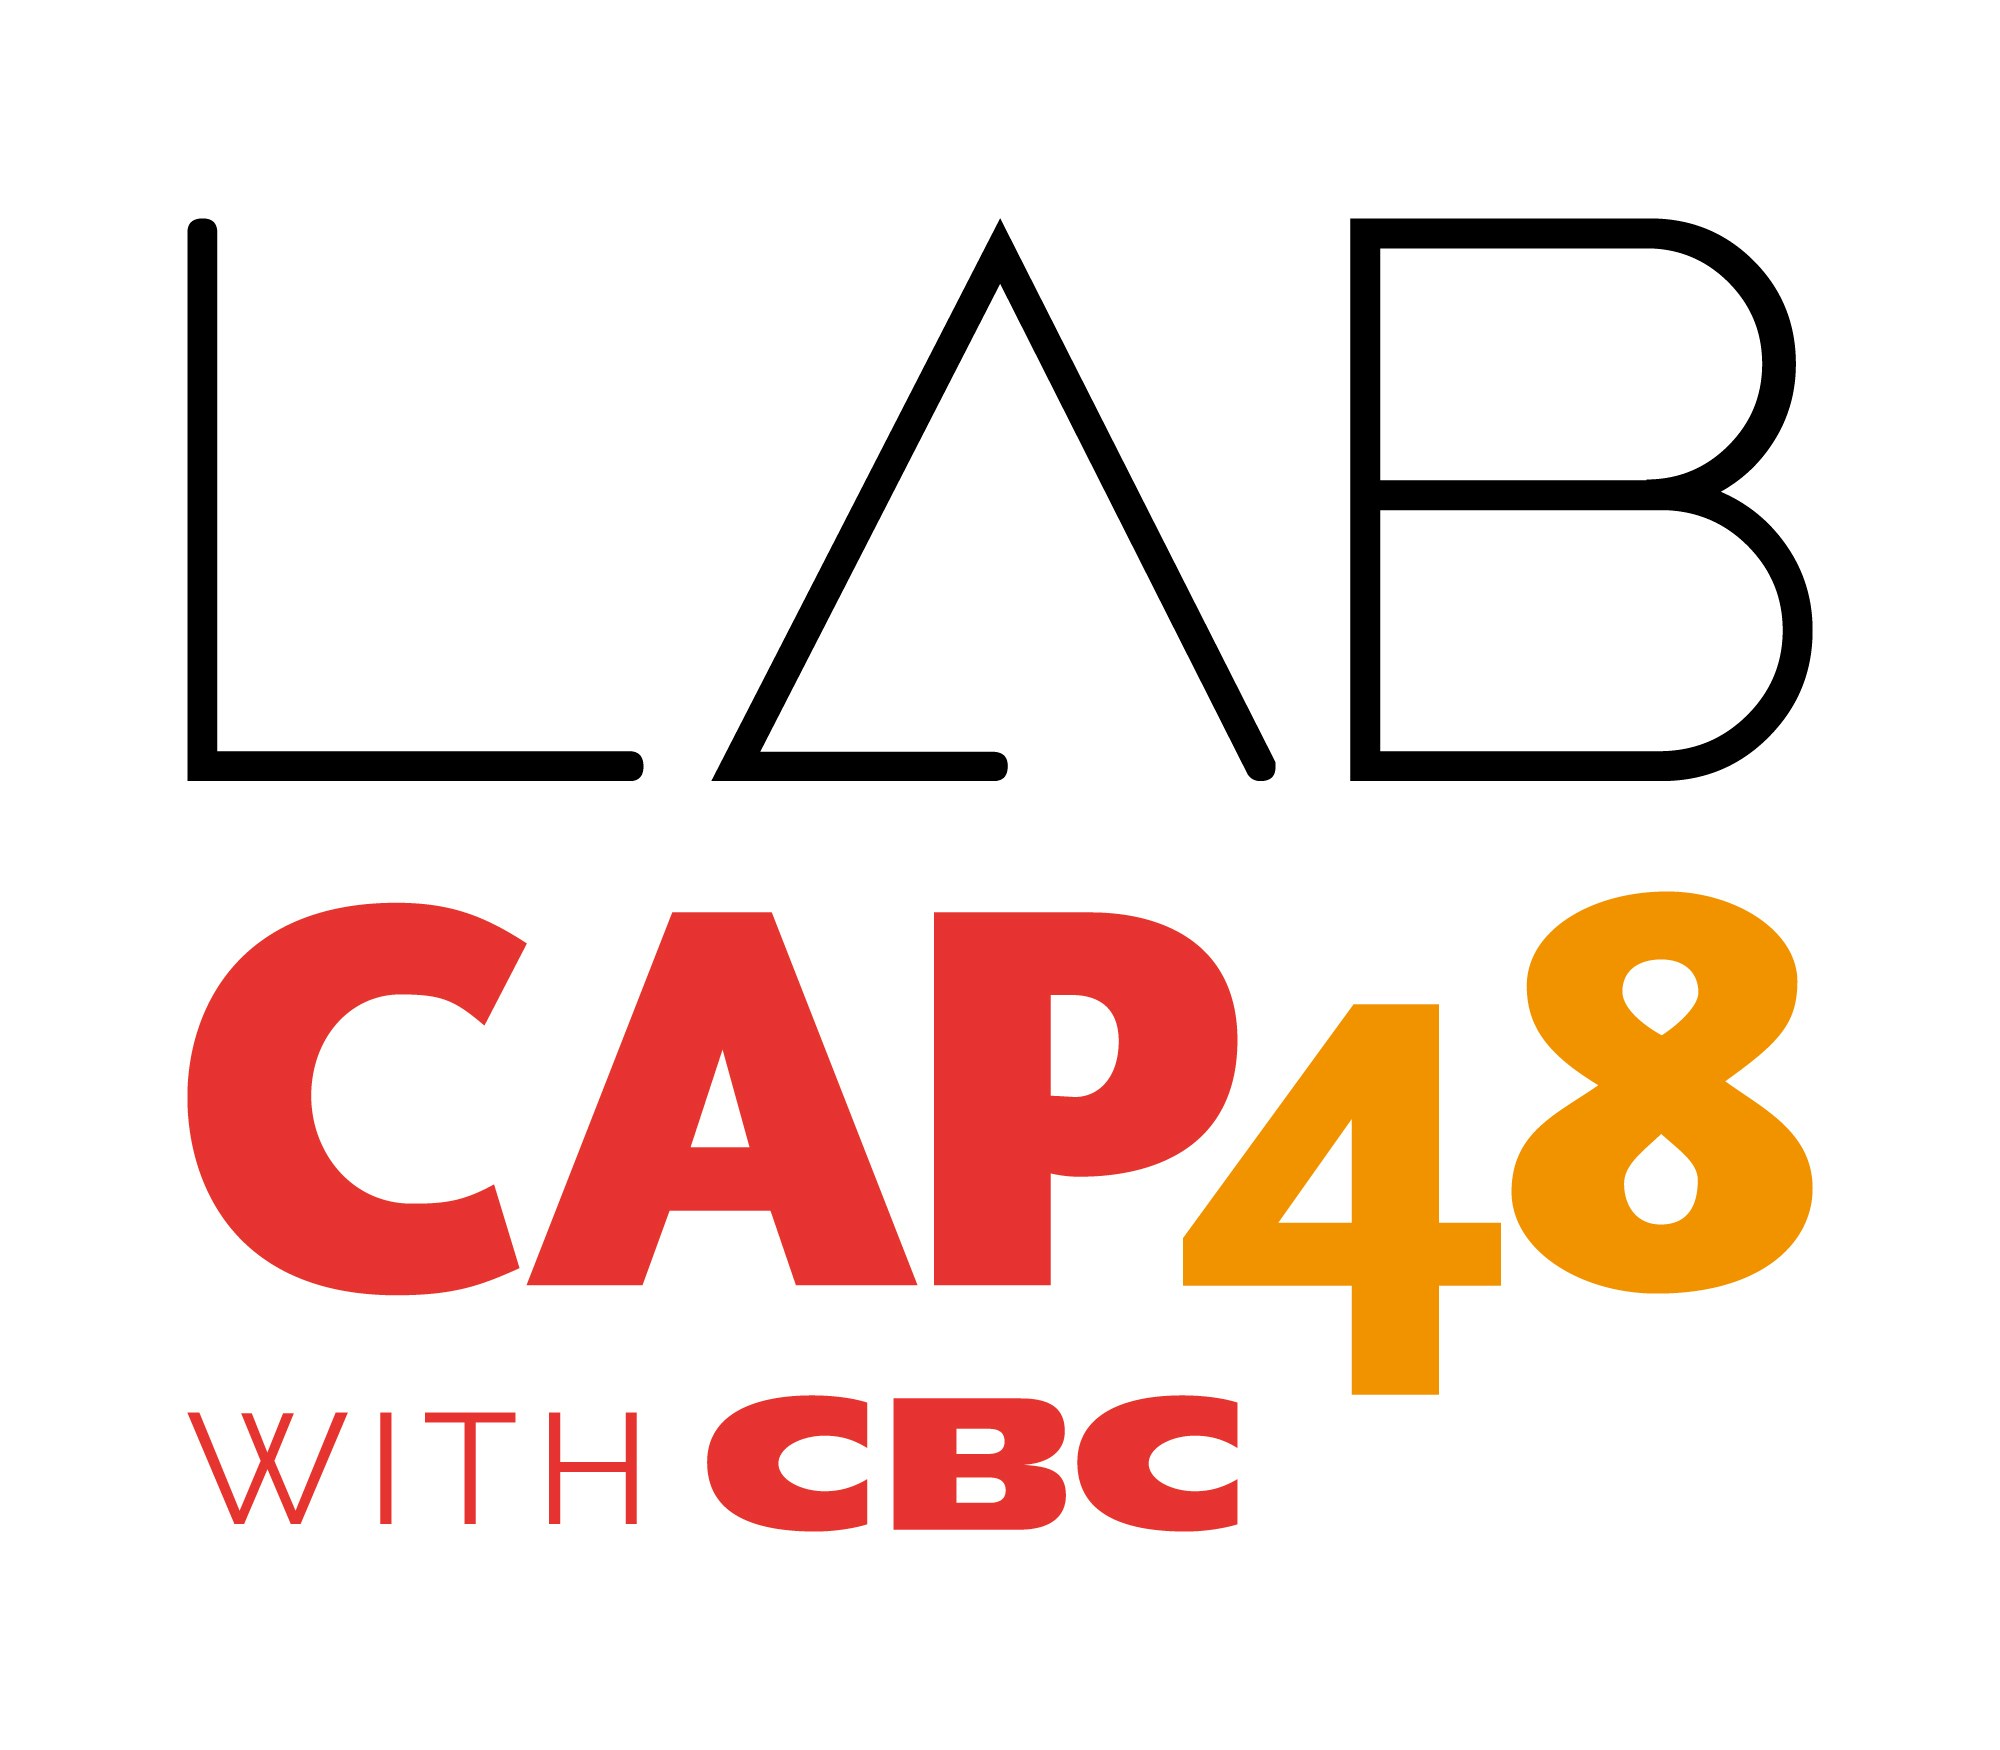 Clairs Vallons participe à la récolte de dons du "LabCAP48 with CBC" de cette année. 